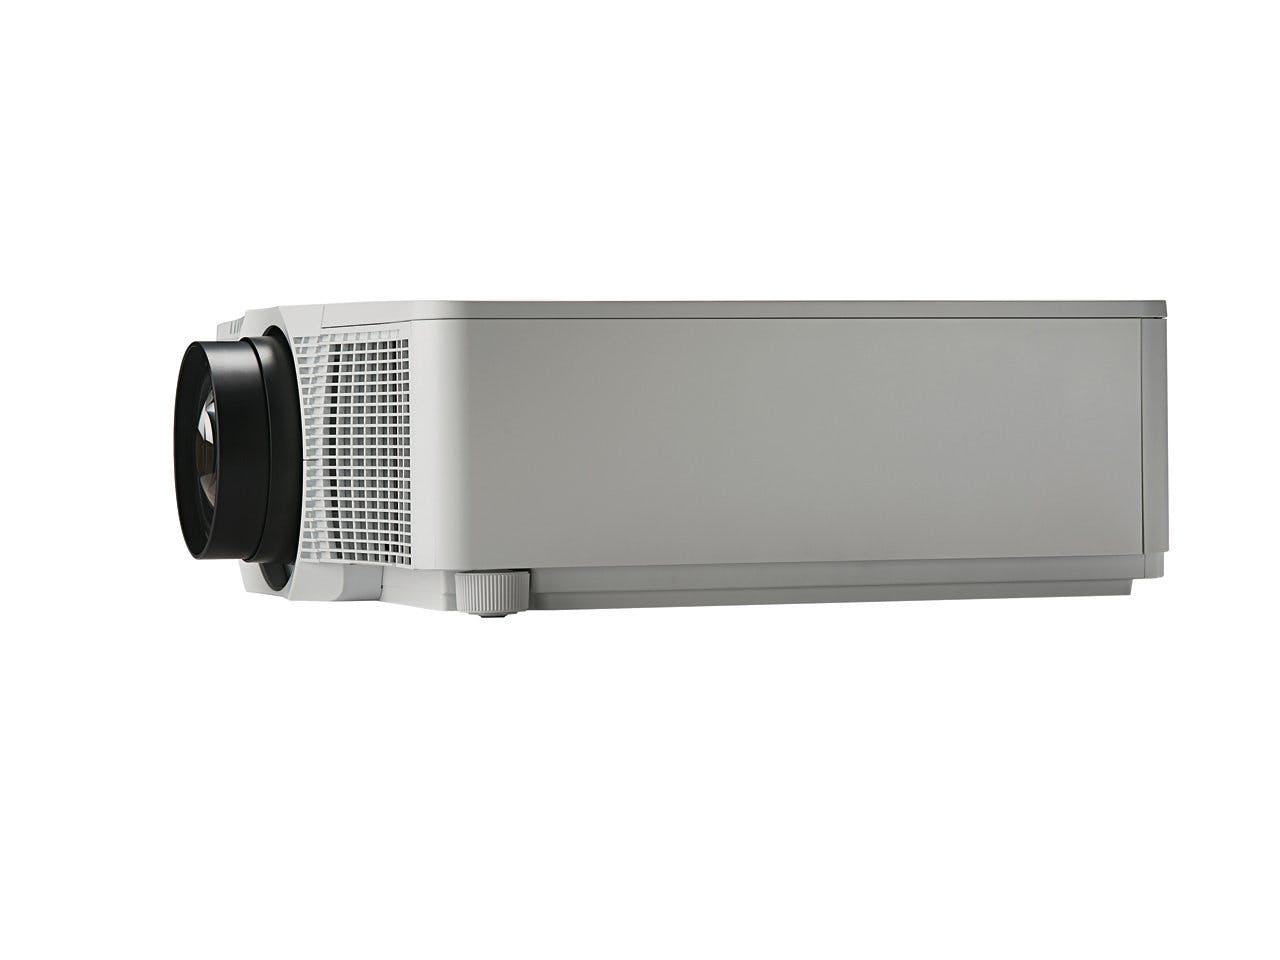 Christie DWX851-Q 1DLP projectors | 121-031105-01 (white) | 121-031116-01 (black)